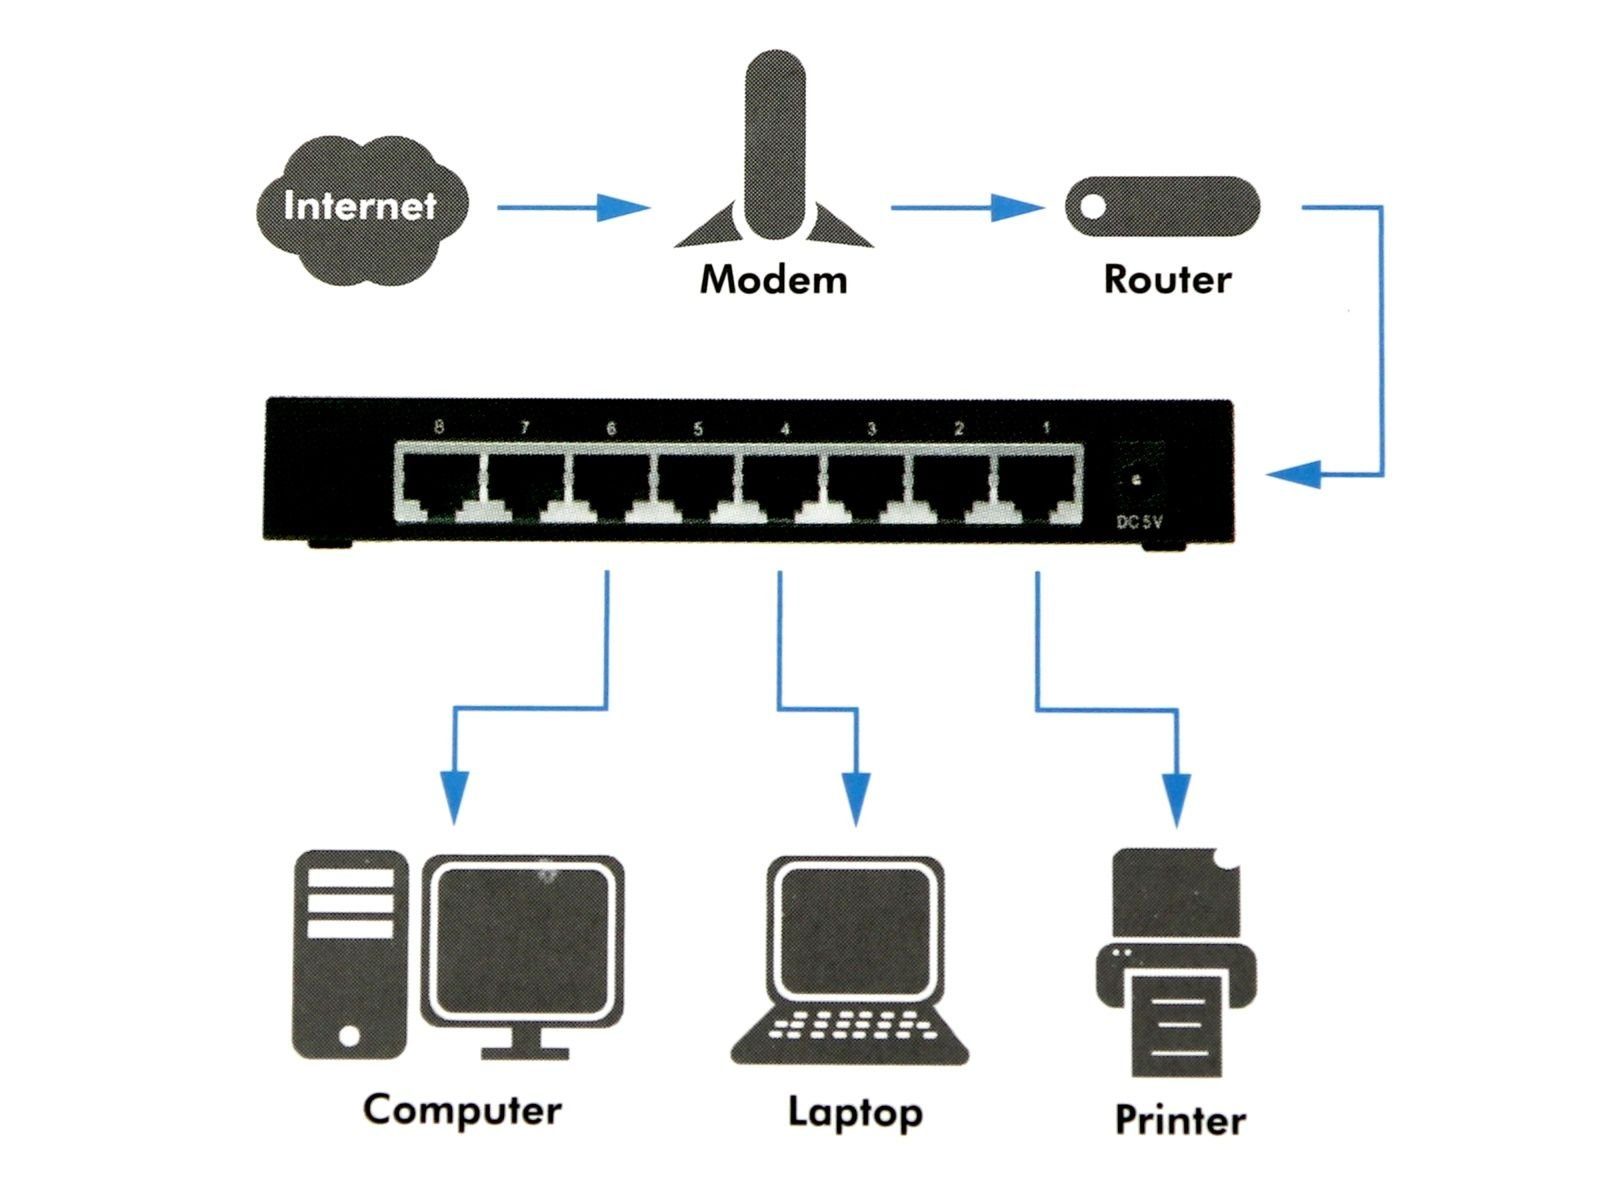 LogiLink Netzwerk-Switch LOGILINK Netzwerk-Switch Gigabit NS0106, 8-port